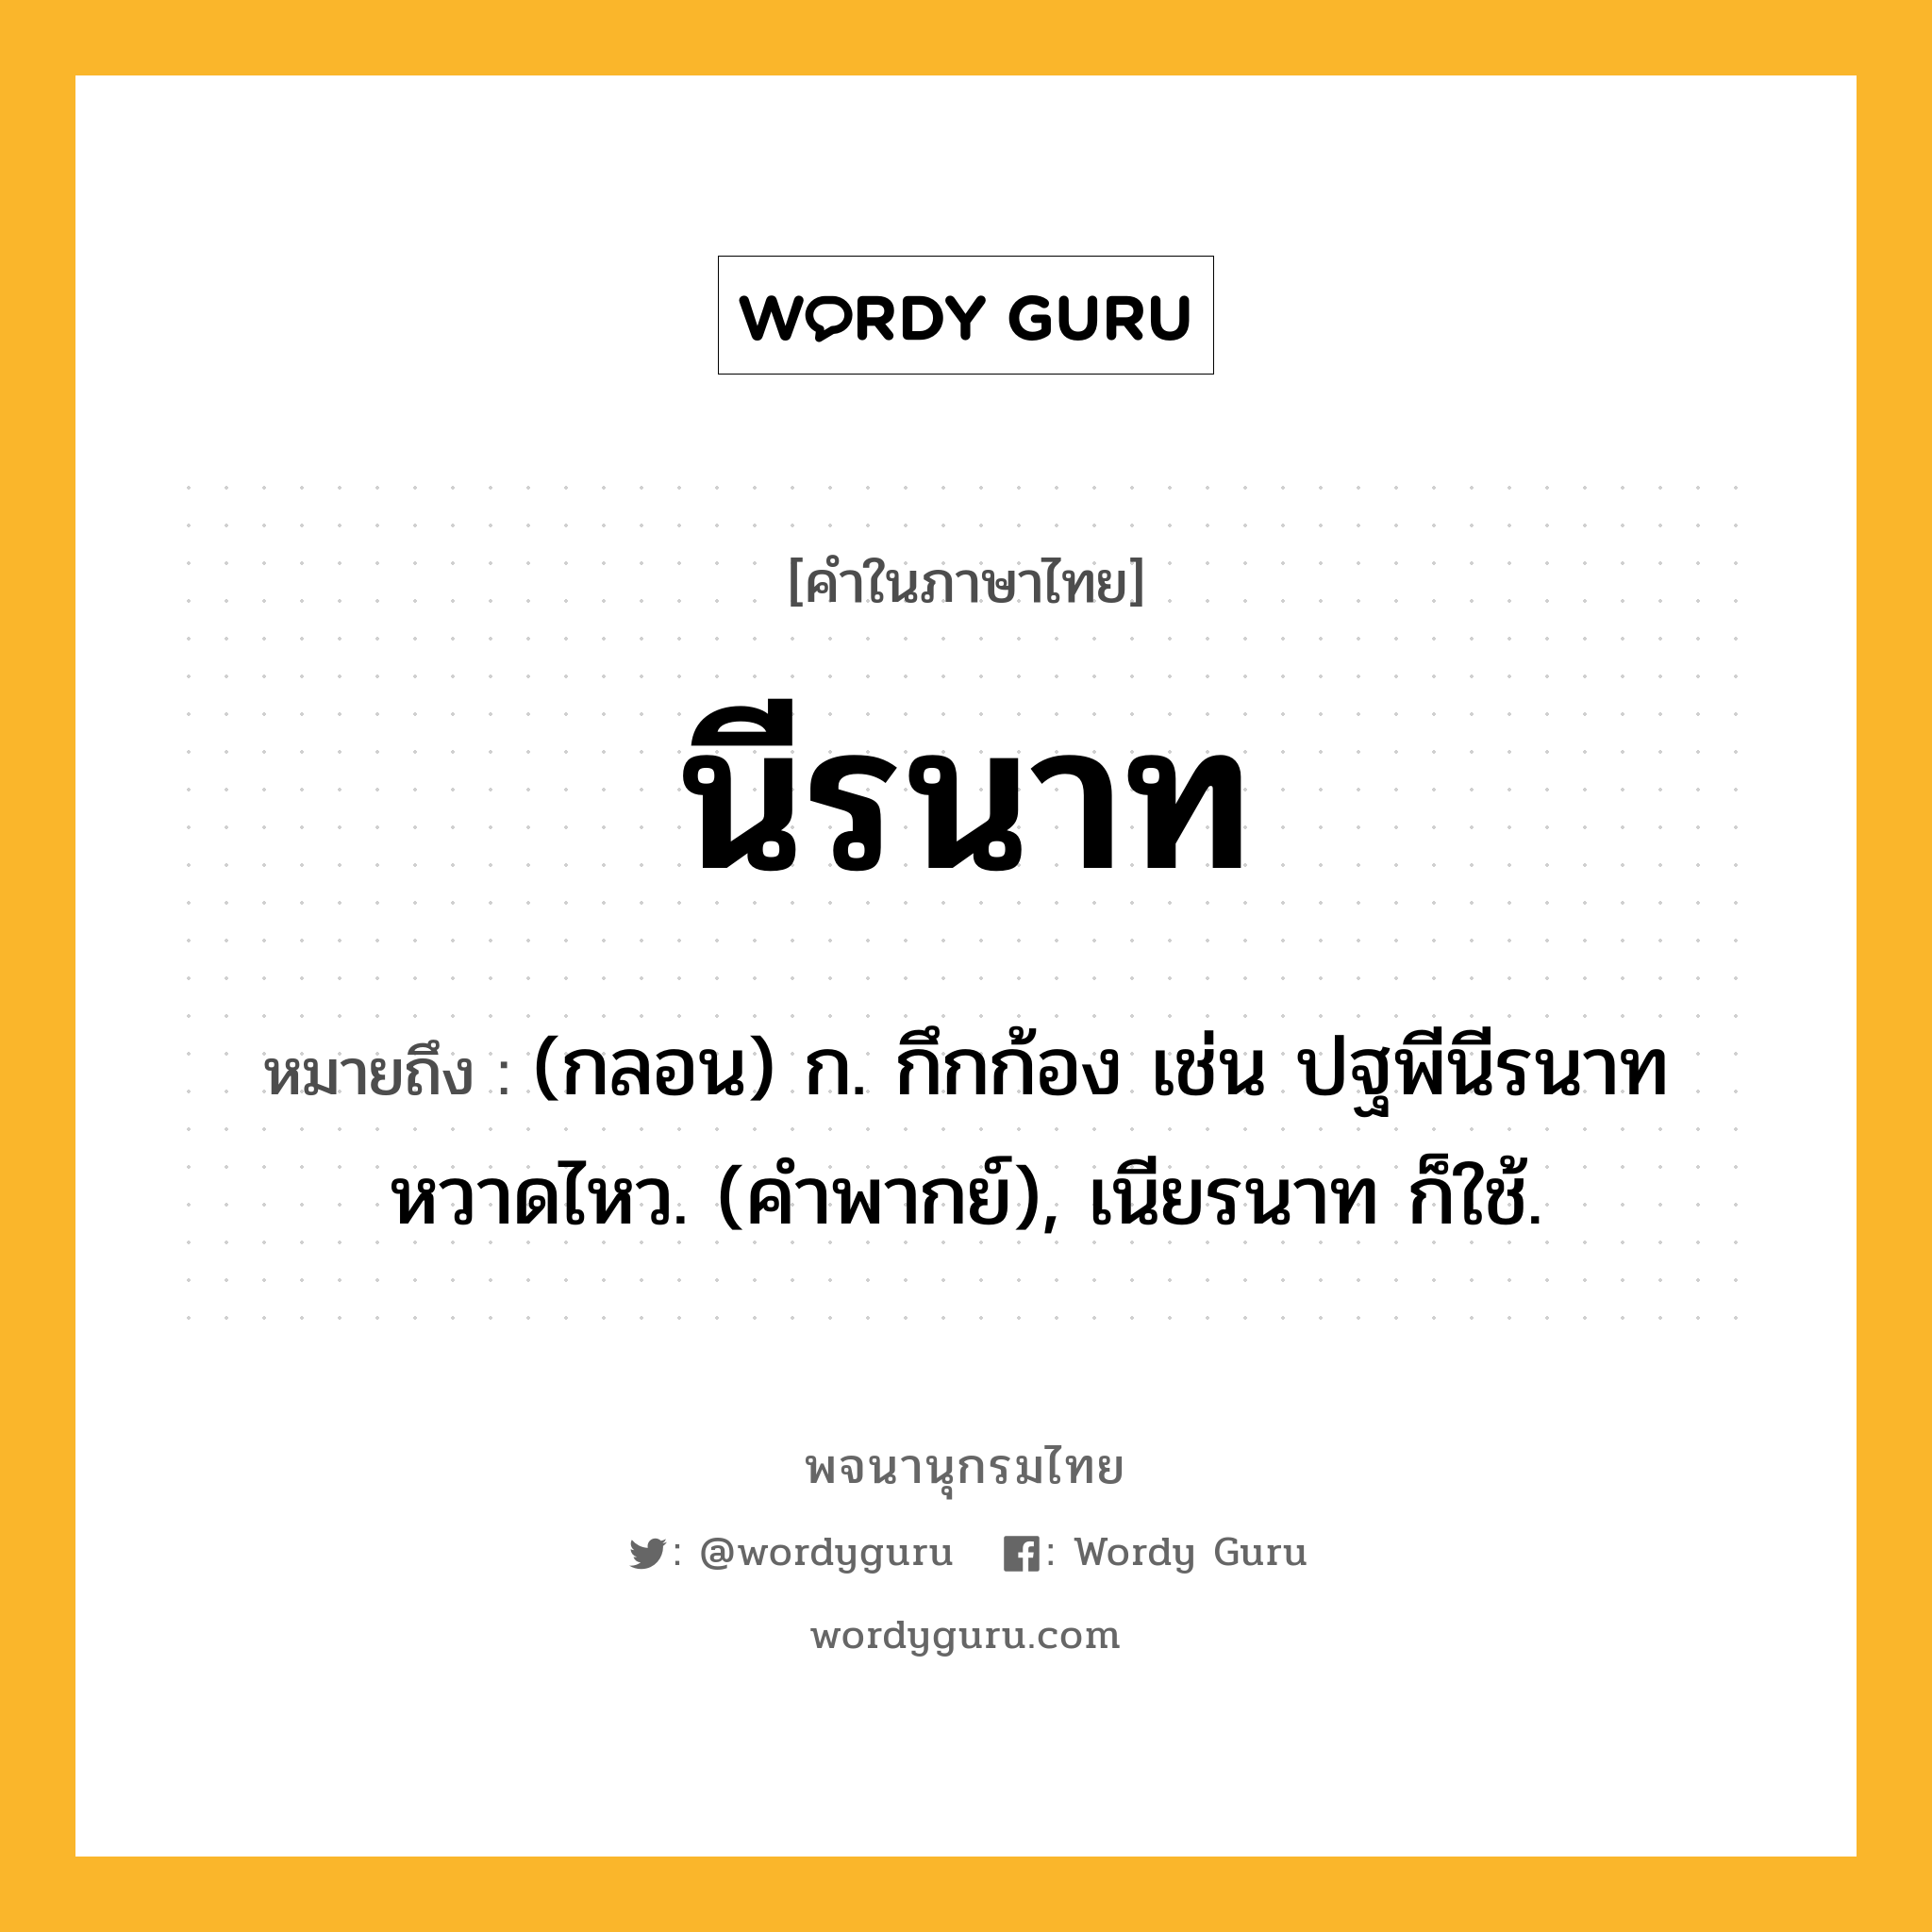 นีรนาท หมายถึงอะไร?, คำในภาษาไทย นีรนาท หมายถึง (กลอน) ก. กึกก้อง เช่น ปฐพีนีรนาทหวาดไหว. (คําพากย์), เนียรนาท ก็ใช้.